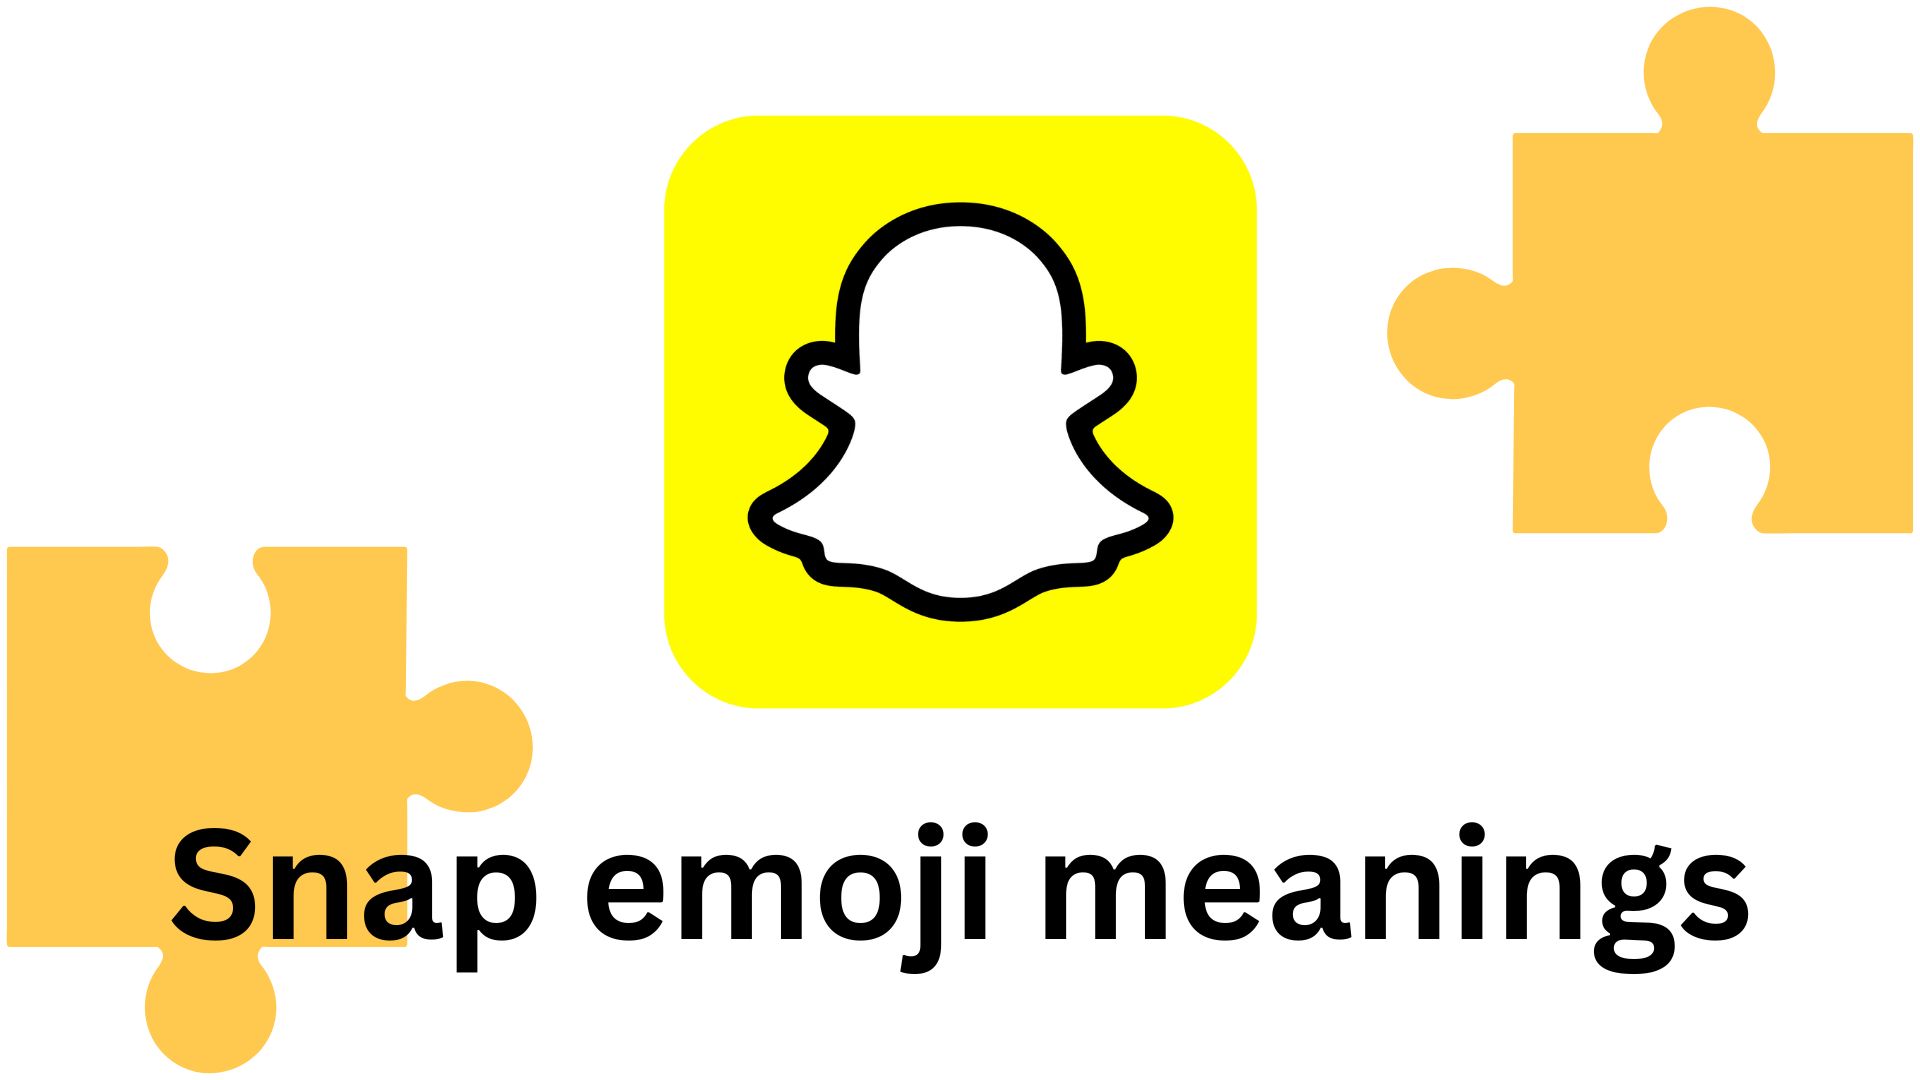 Snap emoji meanings